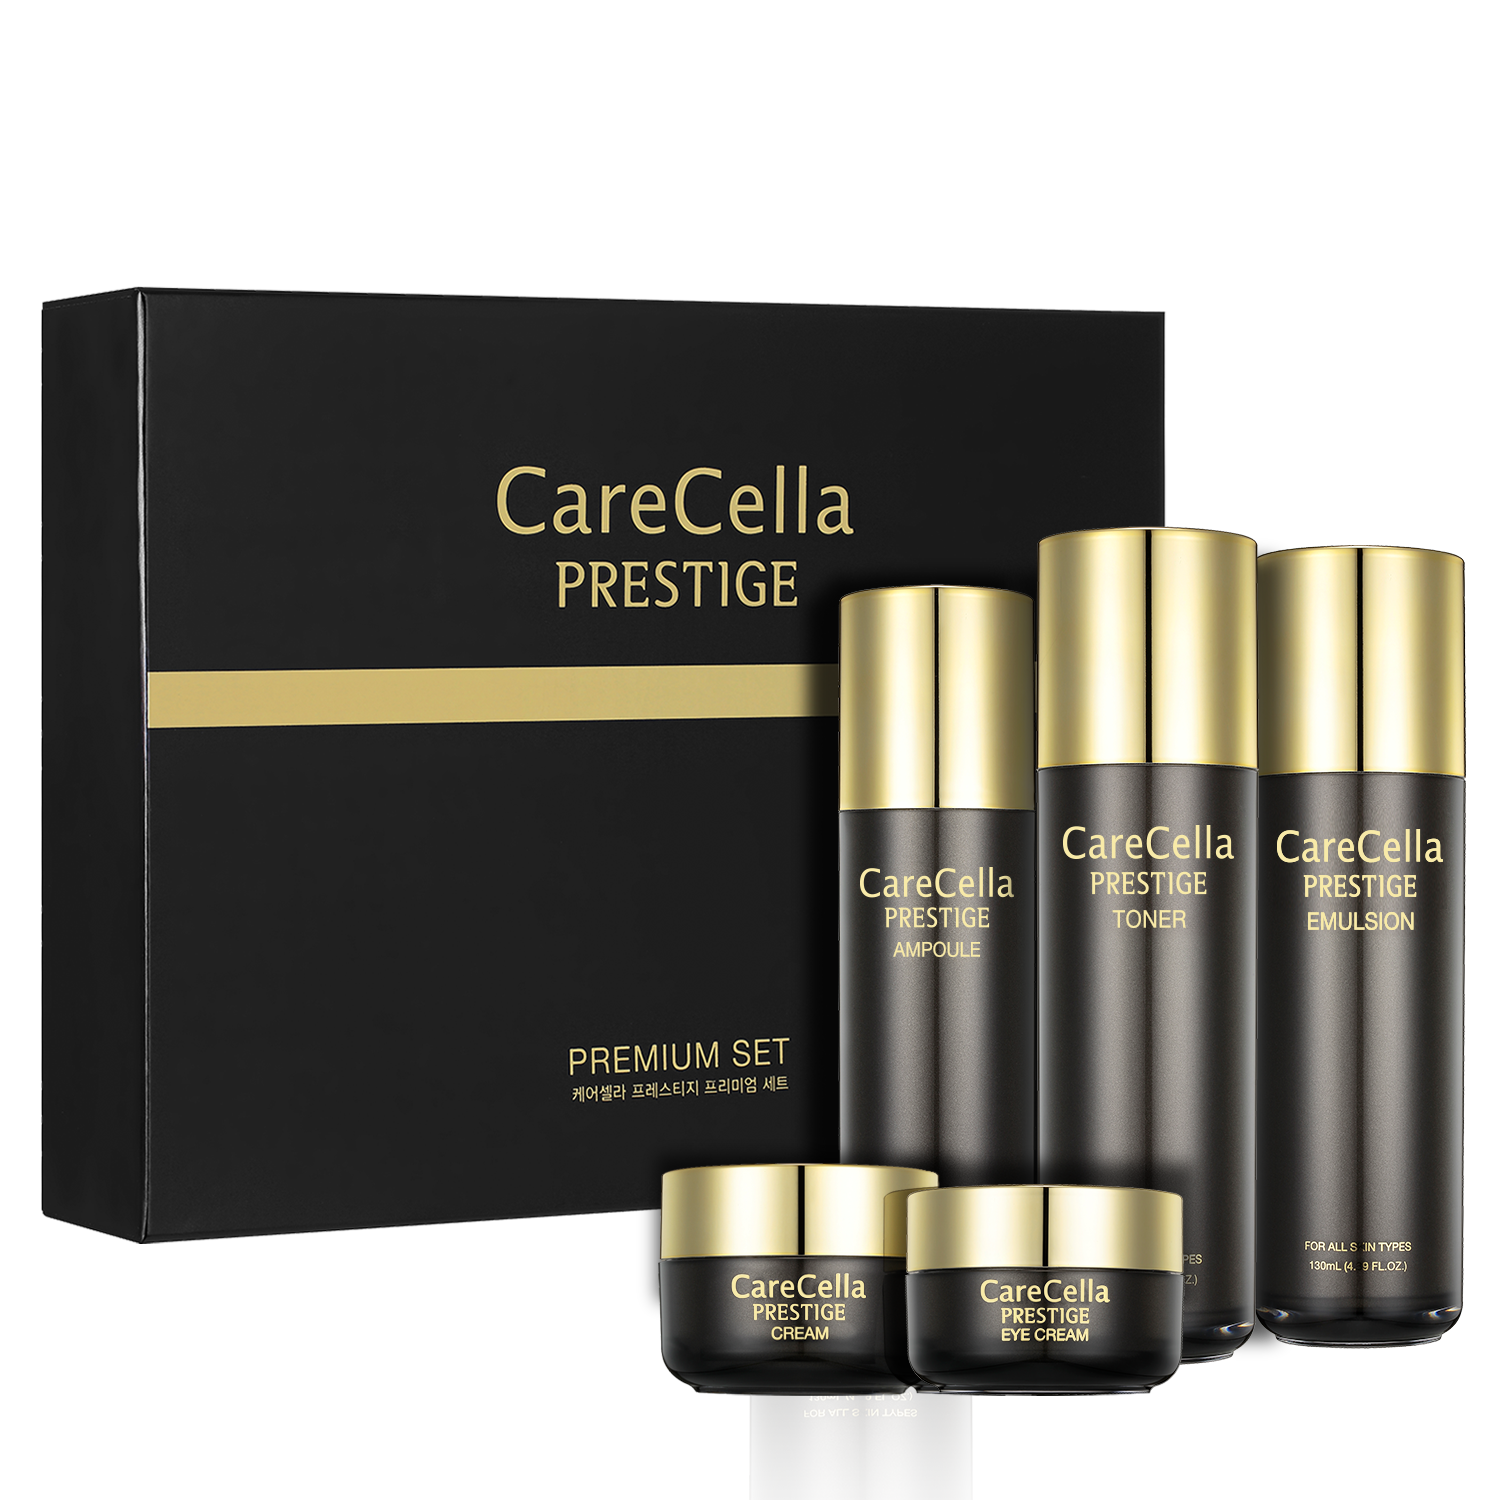 Bộ sản phẩm dưỡng da cao cấp CareCella Prestige / CareCella Prestige Premium Set